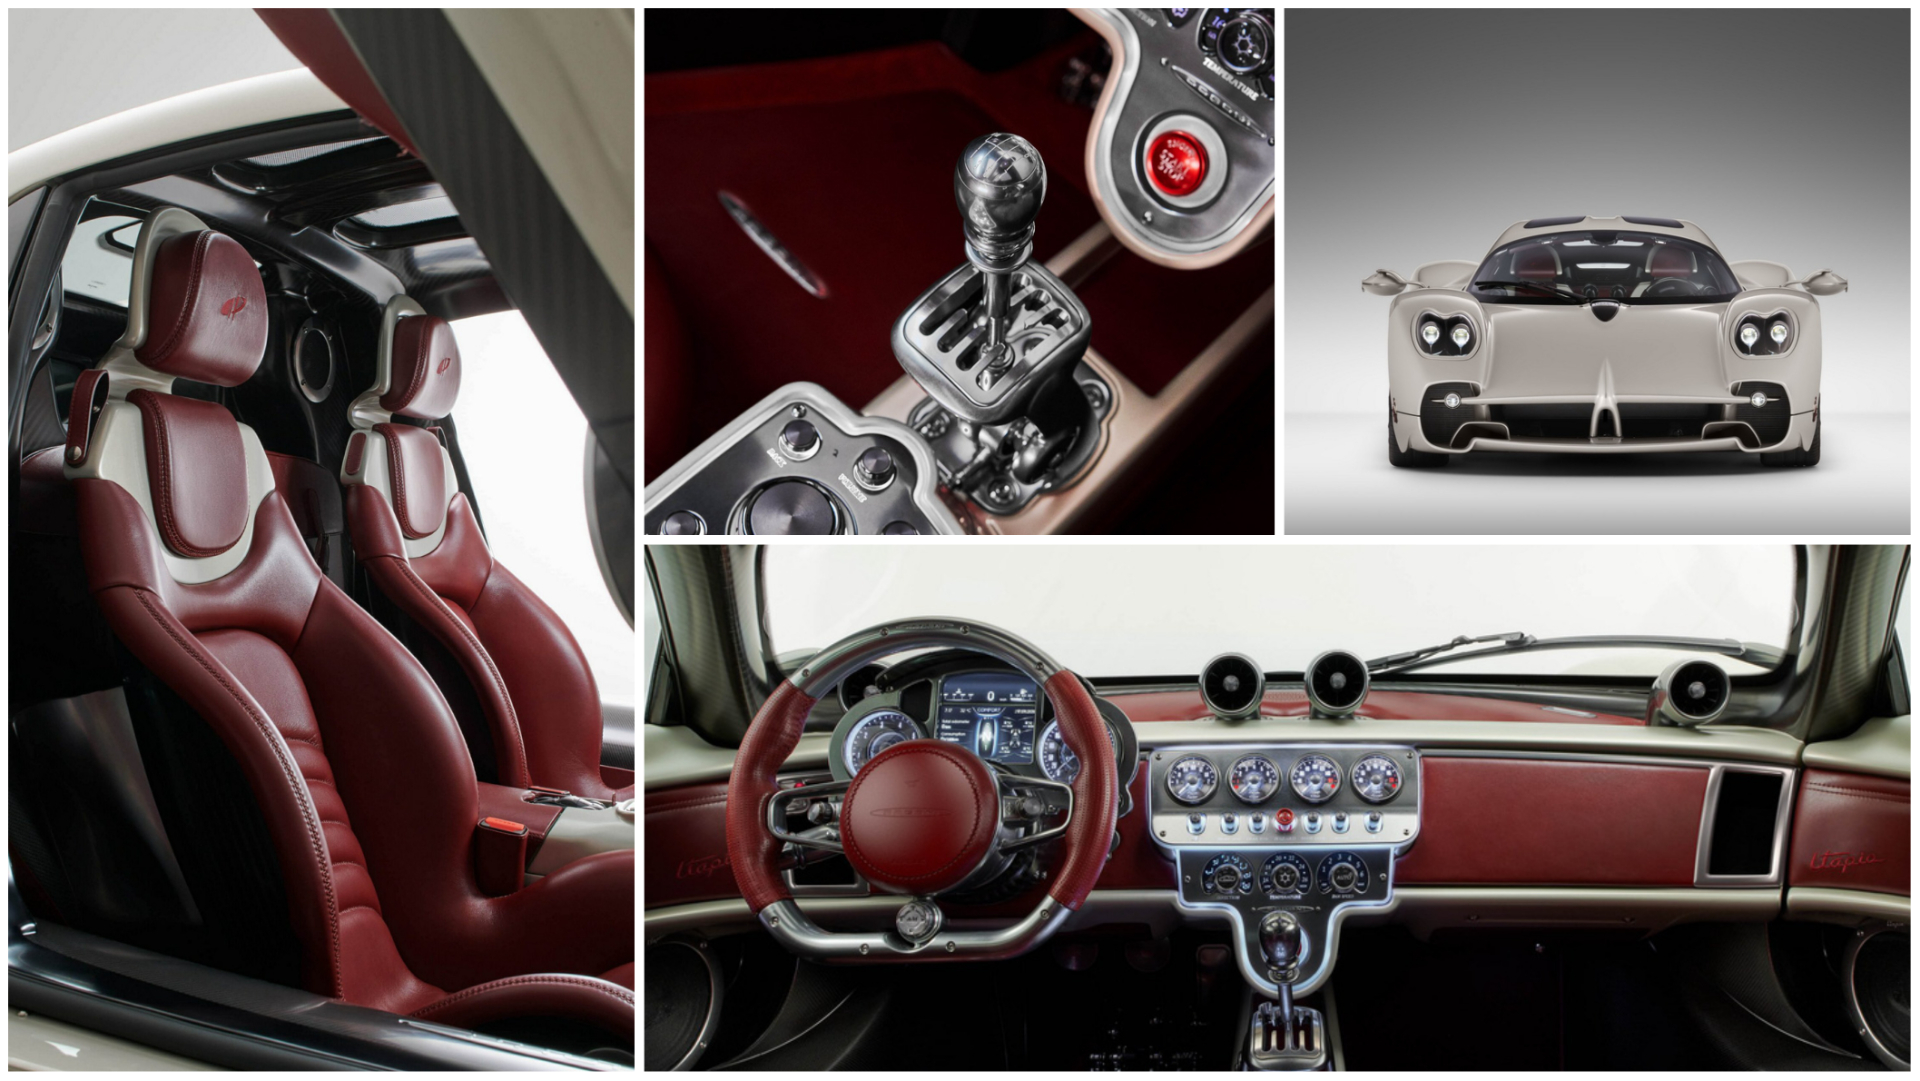 Pagani Utopia ra mắt với động cơ Mercedes, nội thất hoài cổ và giá từ 2.19 triệu USD